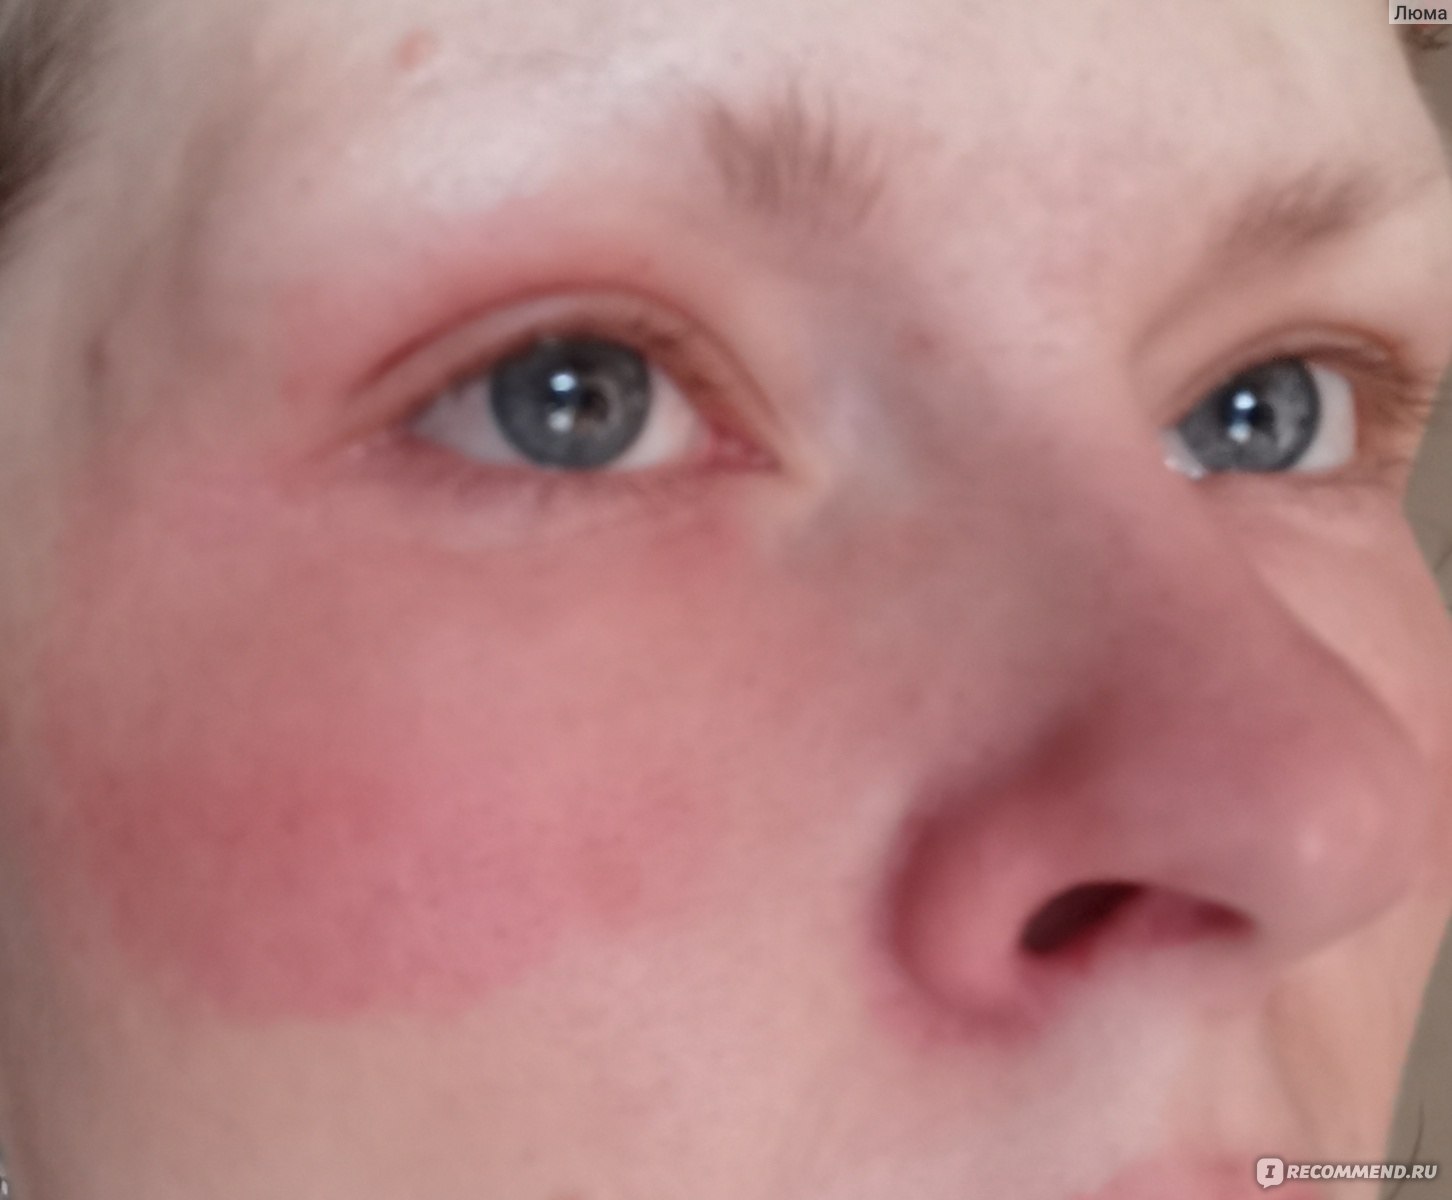 Причины аллергии у взрослых и детей